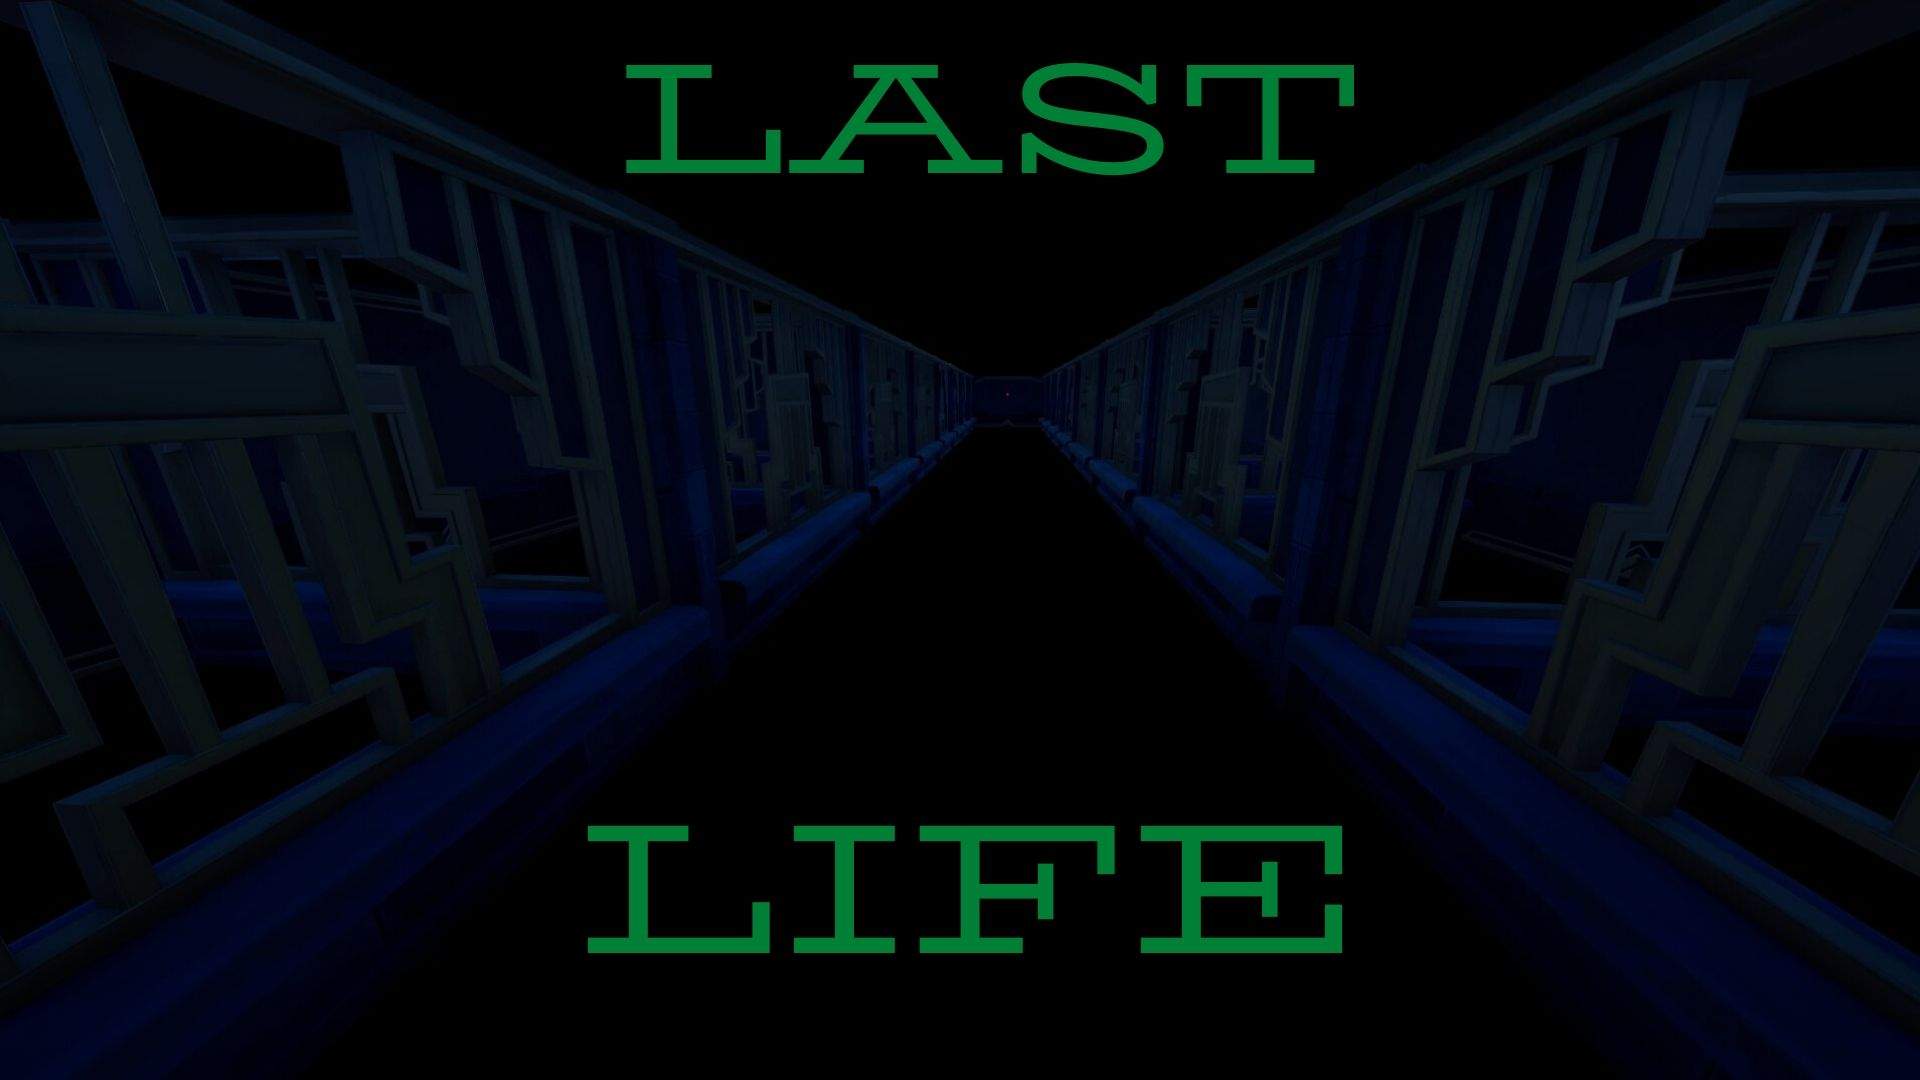 LAST LIFE